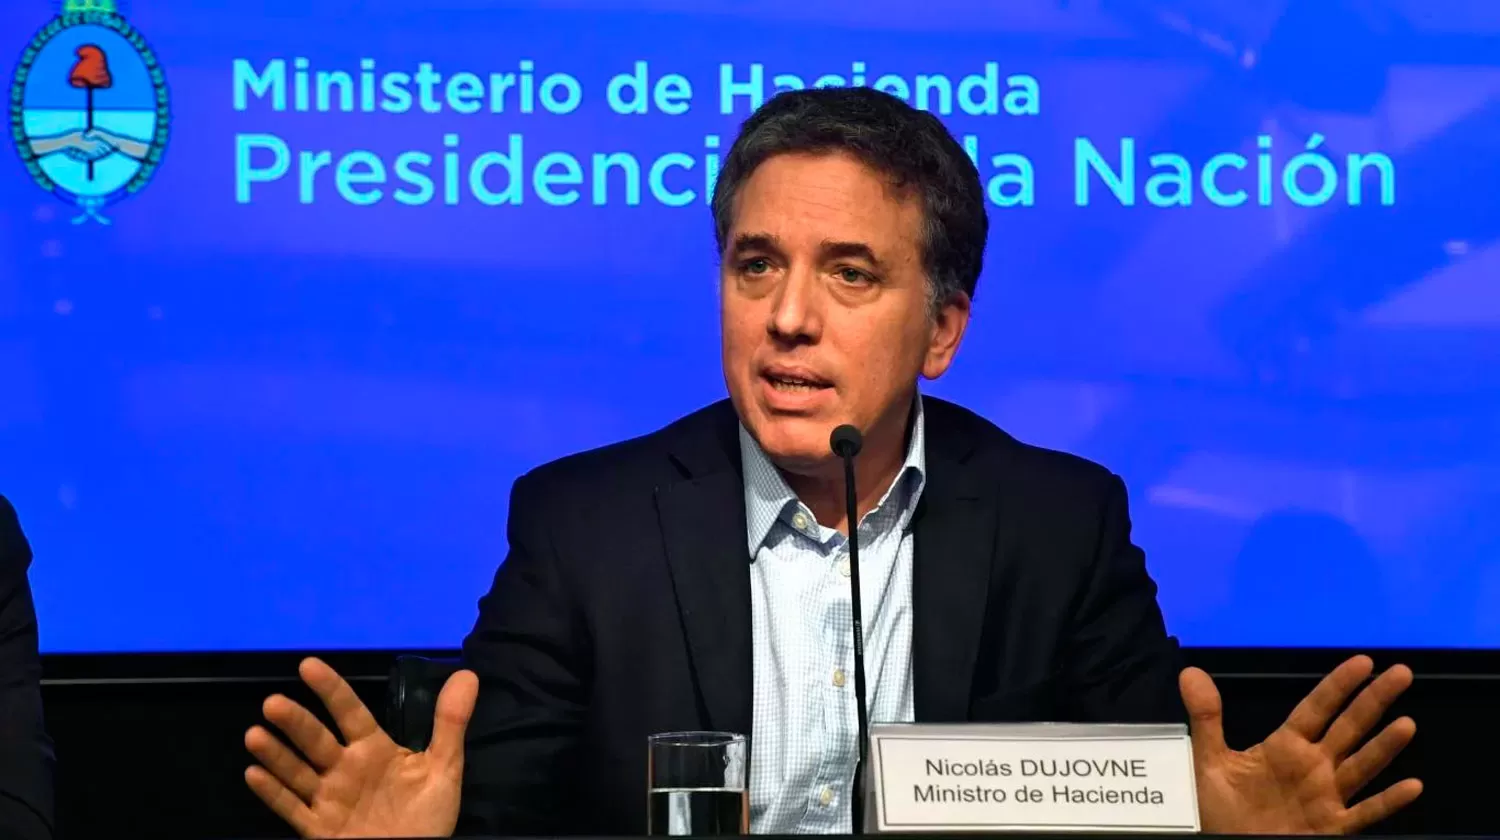 NICOLÁS DUJOVNE. El ministro de Hacienda habló sobre la situación económica argentina.